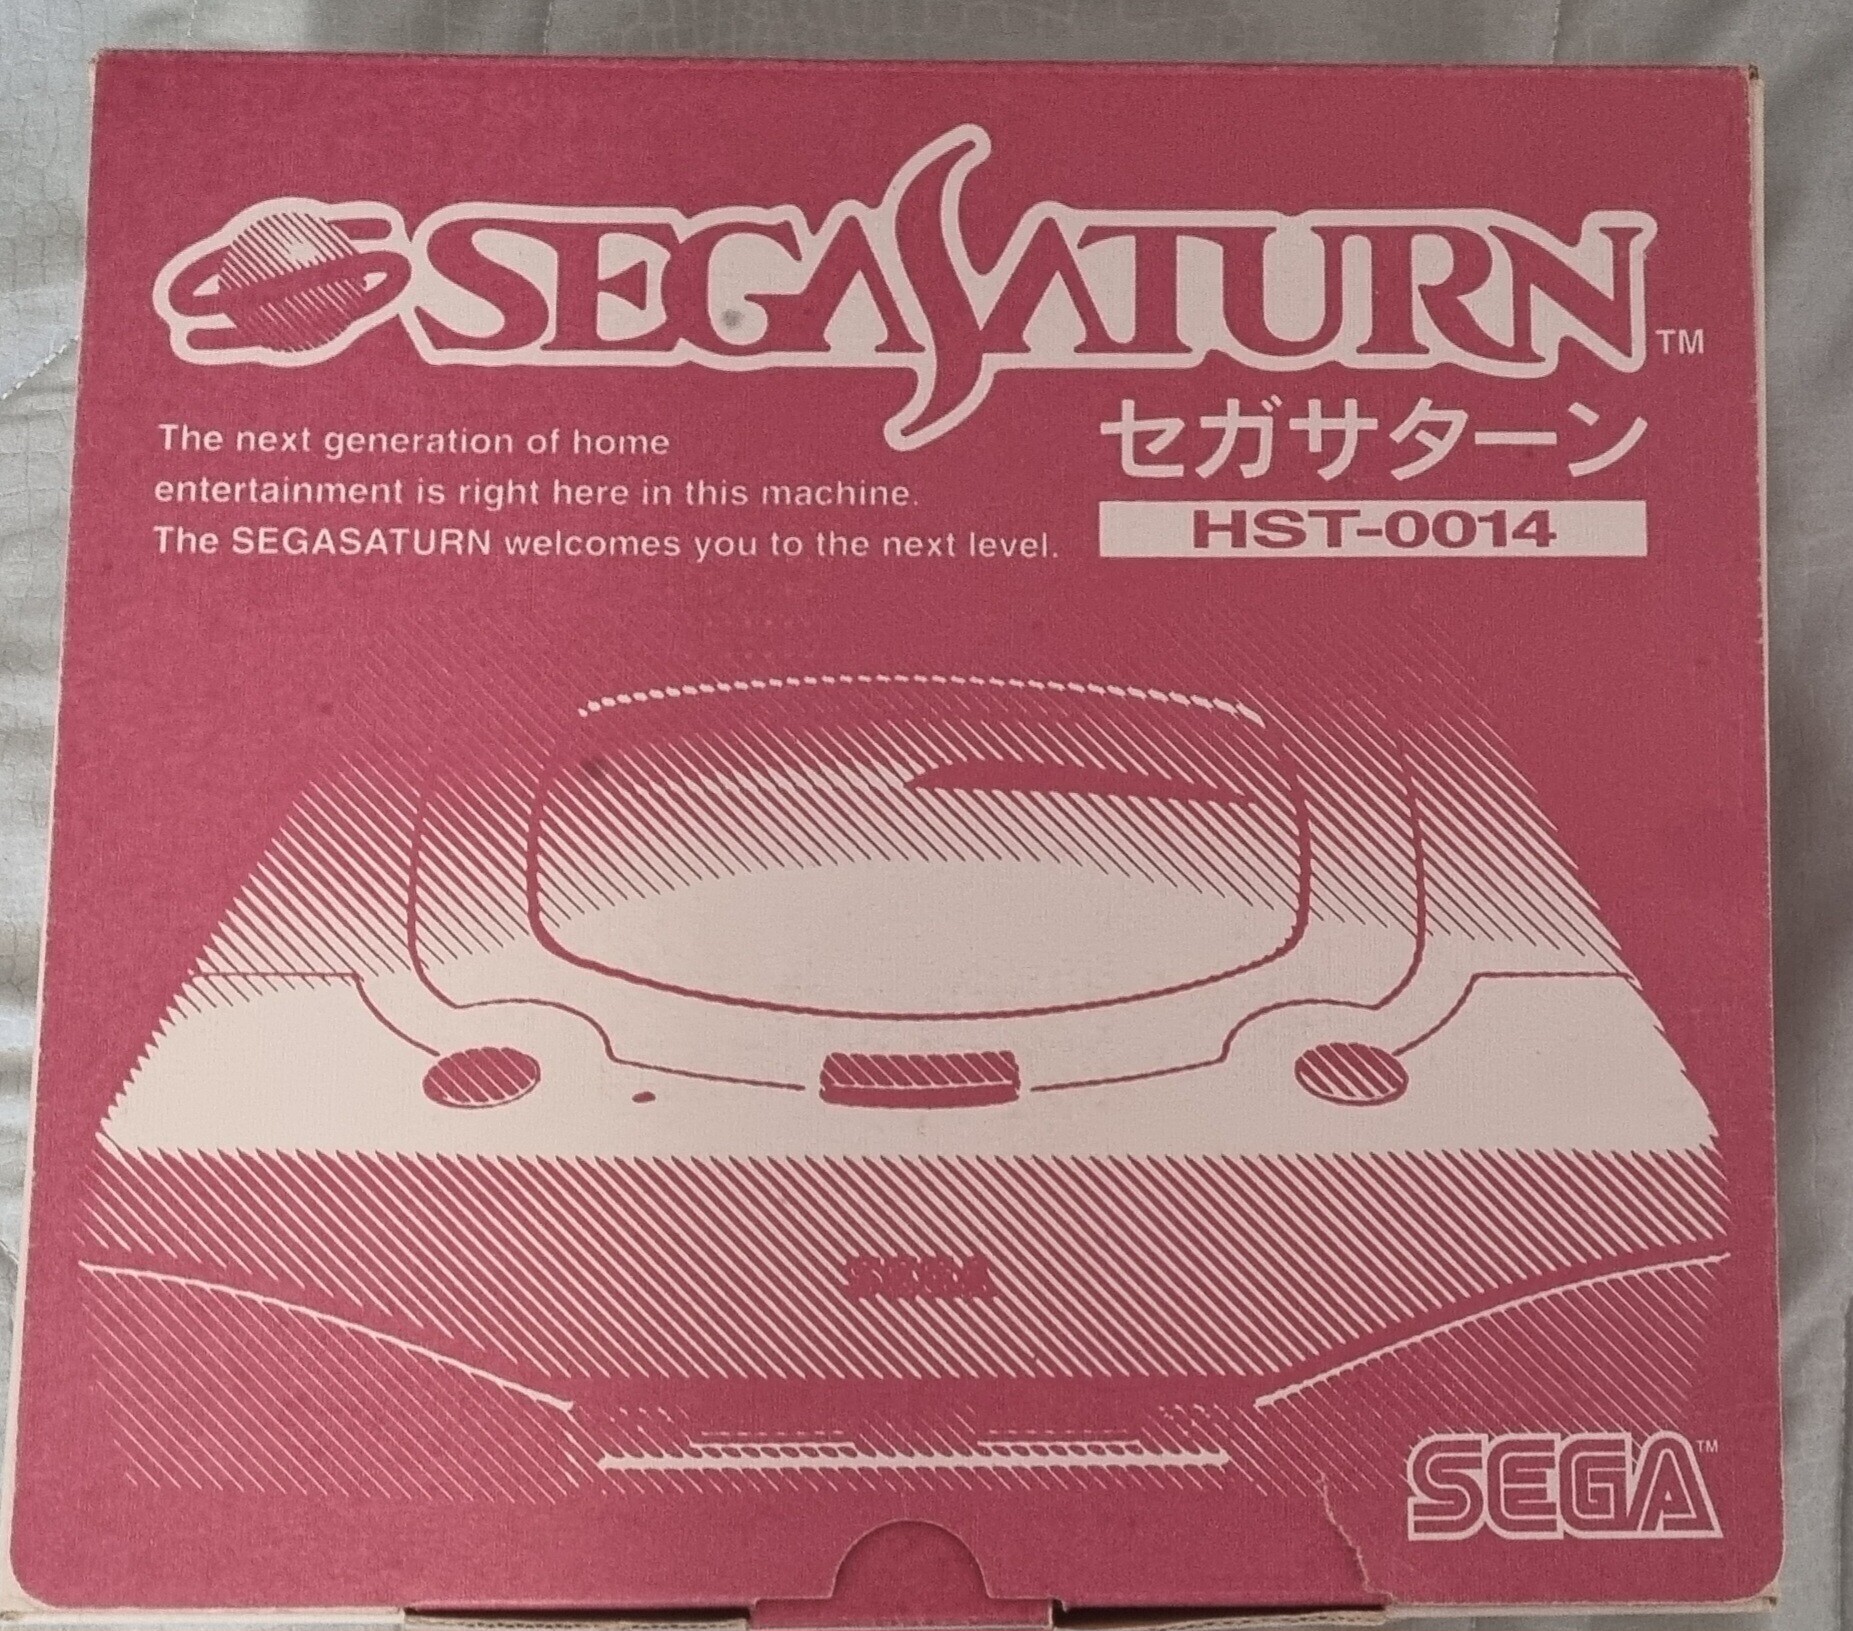  Sega Saturn HST-0014 Console